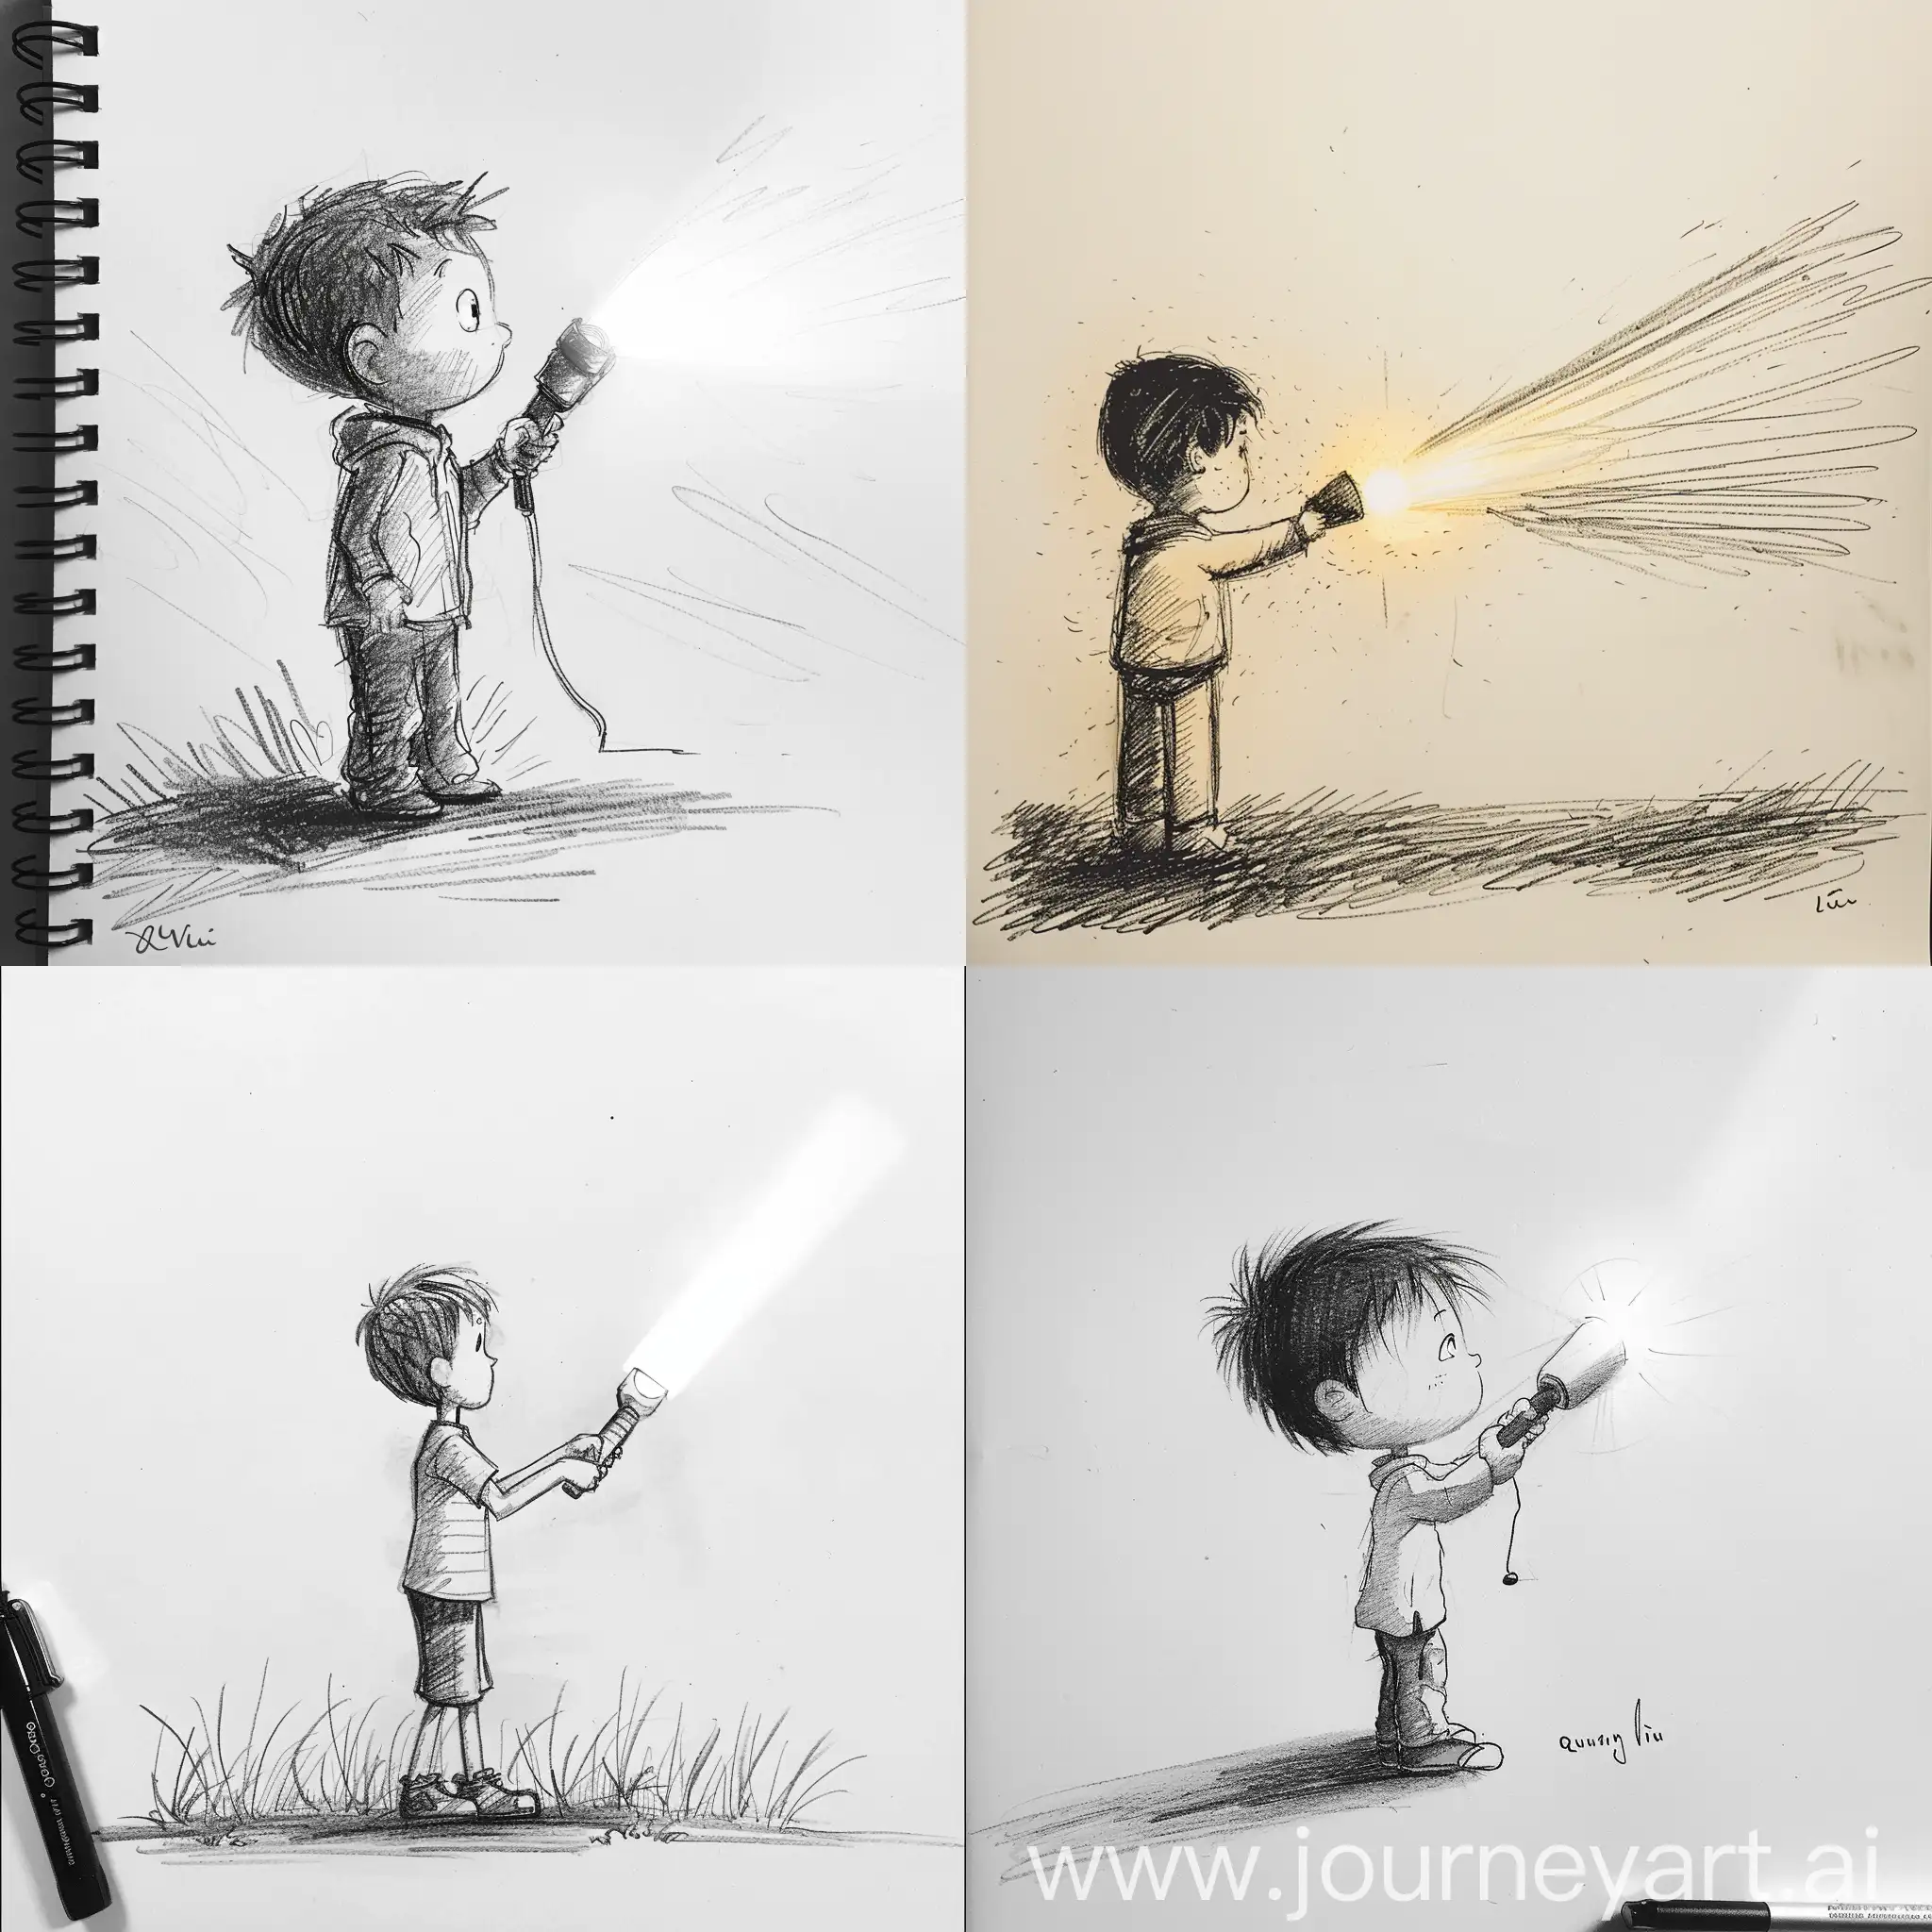 Drawing of a boy holding a flashlight shining at Quan Vu